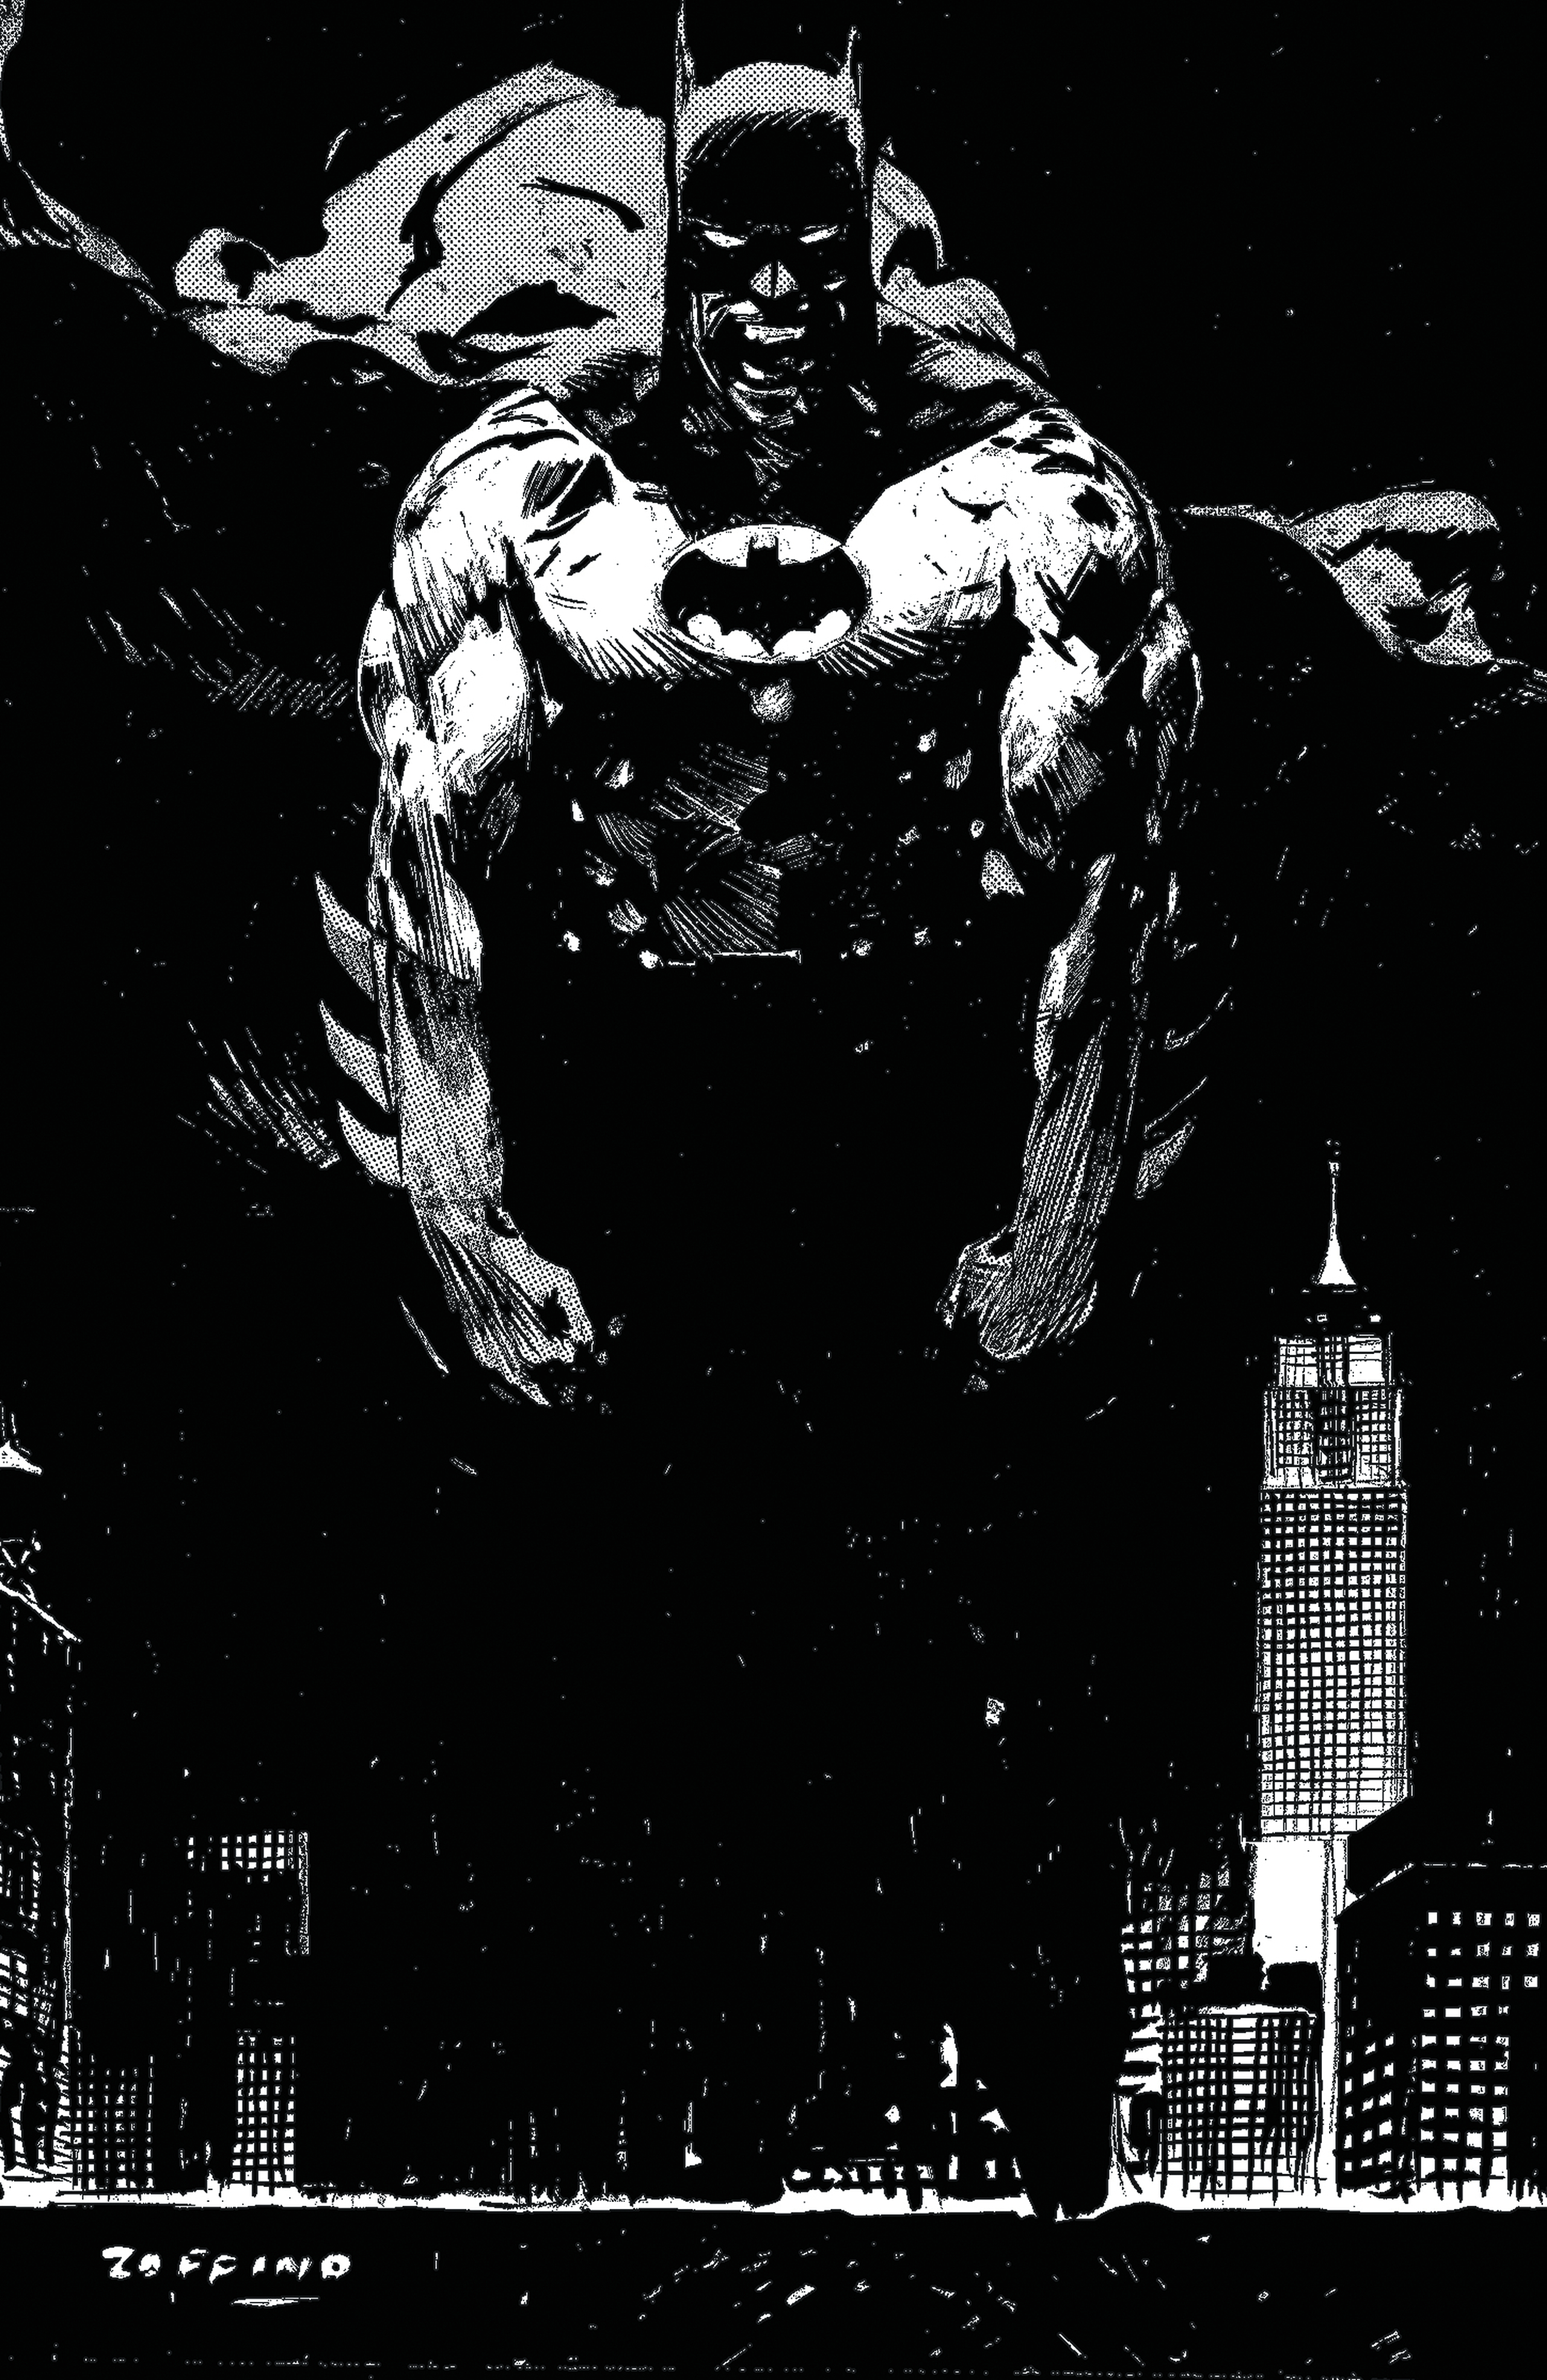 DC COMICS PRESENTS BATMAN URBAN LEGENDS #1